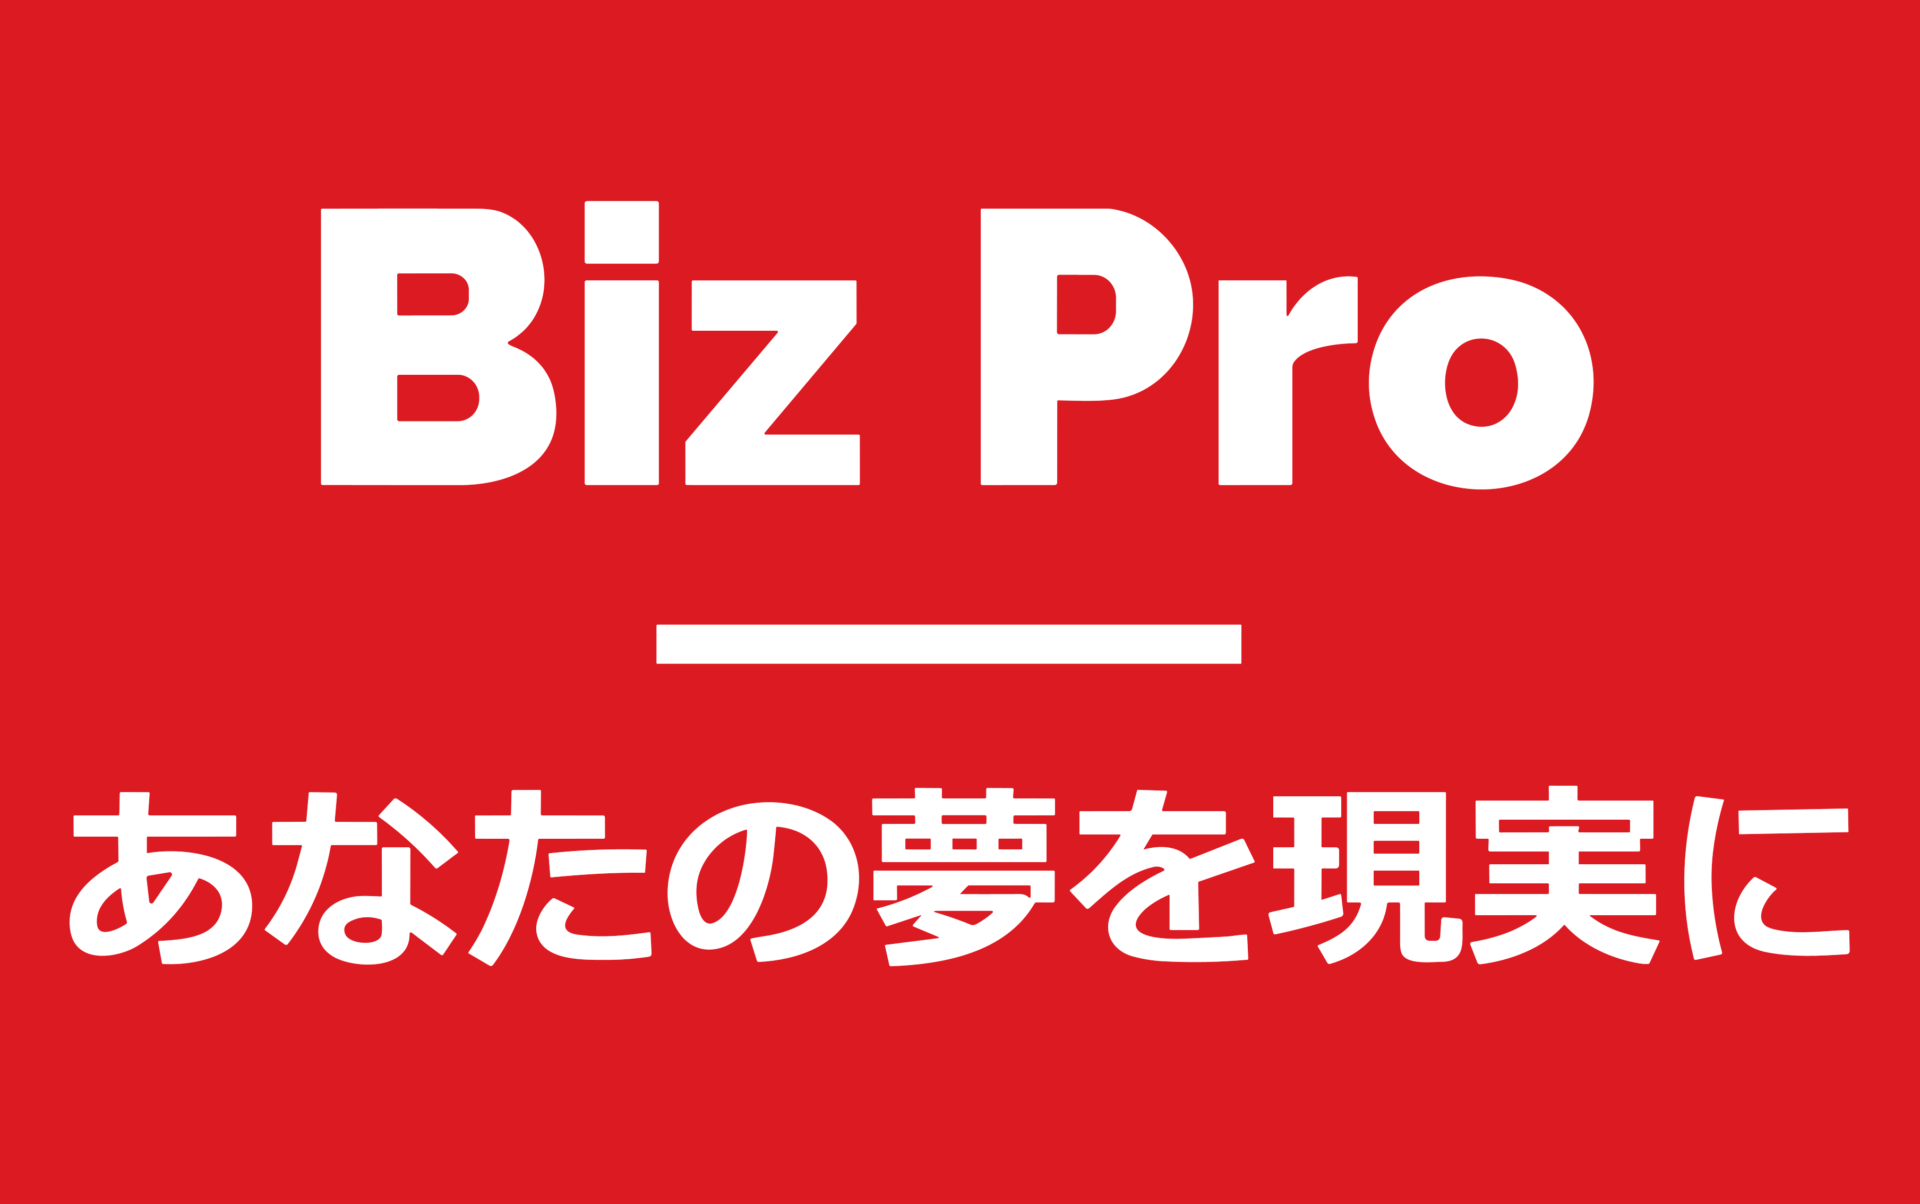 Biz Pro（ビズプロ）-ビジネスプラン（事業計画書）作成に役立つ情報サイト-